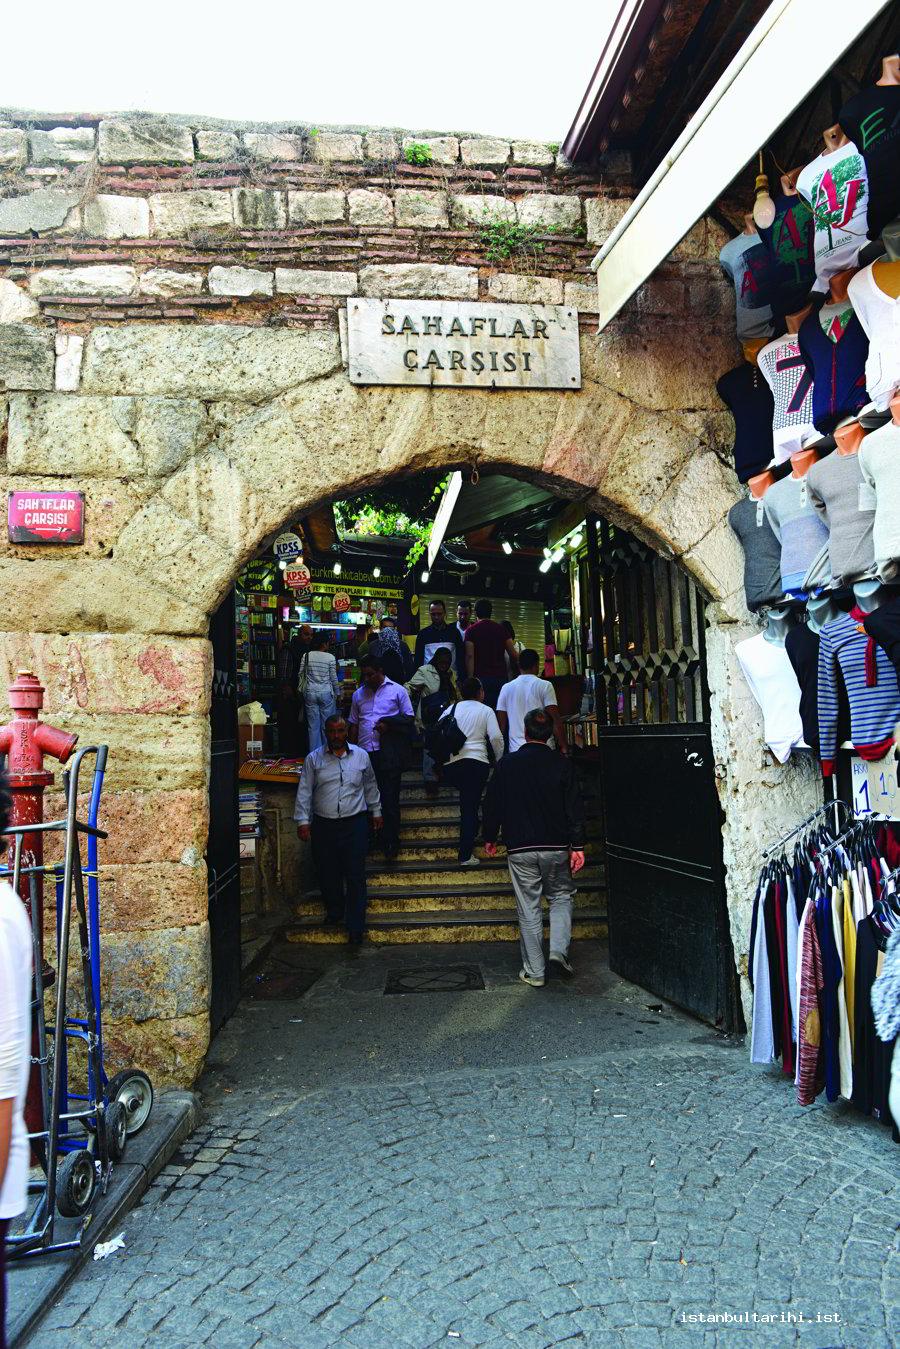 5- İstanbul Sahaflar Çarşısı’nın Kapalı Çarşı tarafındaki giriş kapısı